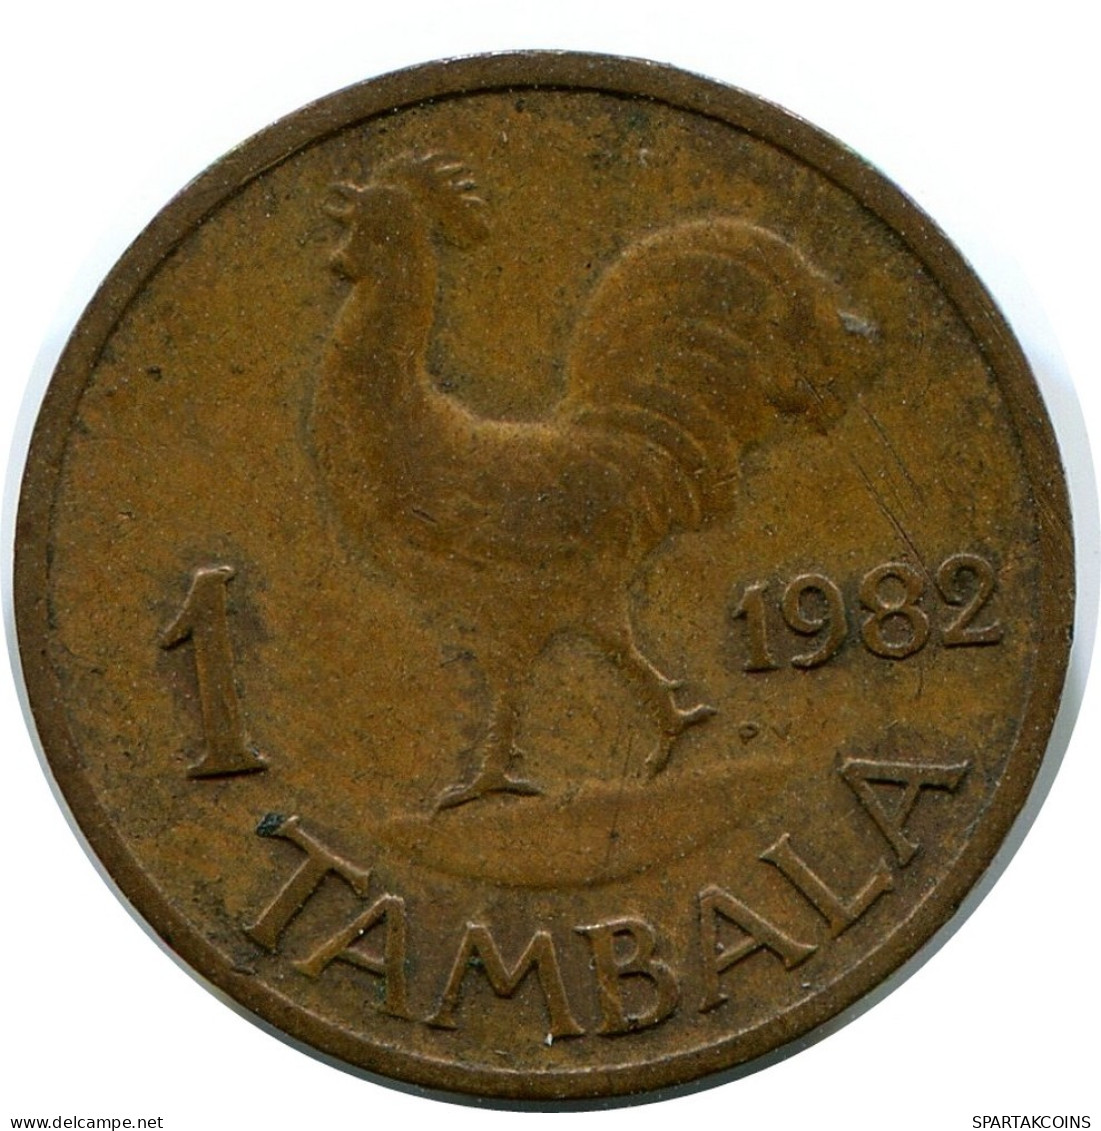 1 TAMBALA 1982 MALAWI Coin #AR866.U.A - Malawi